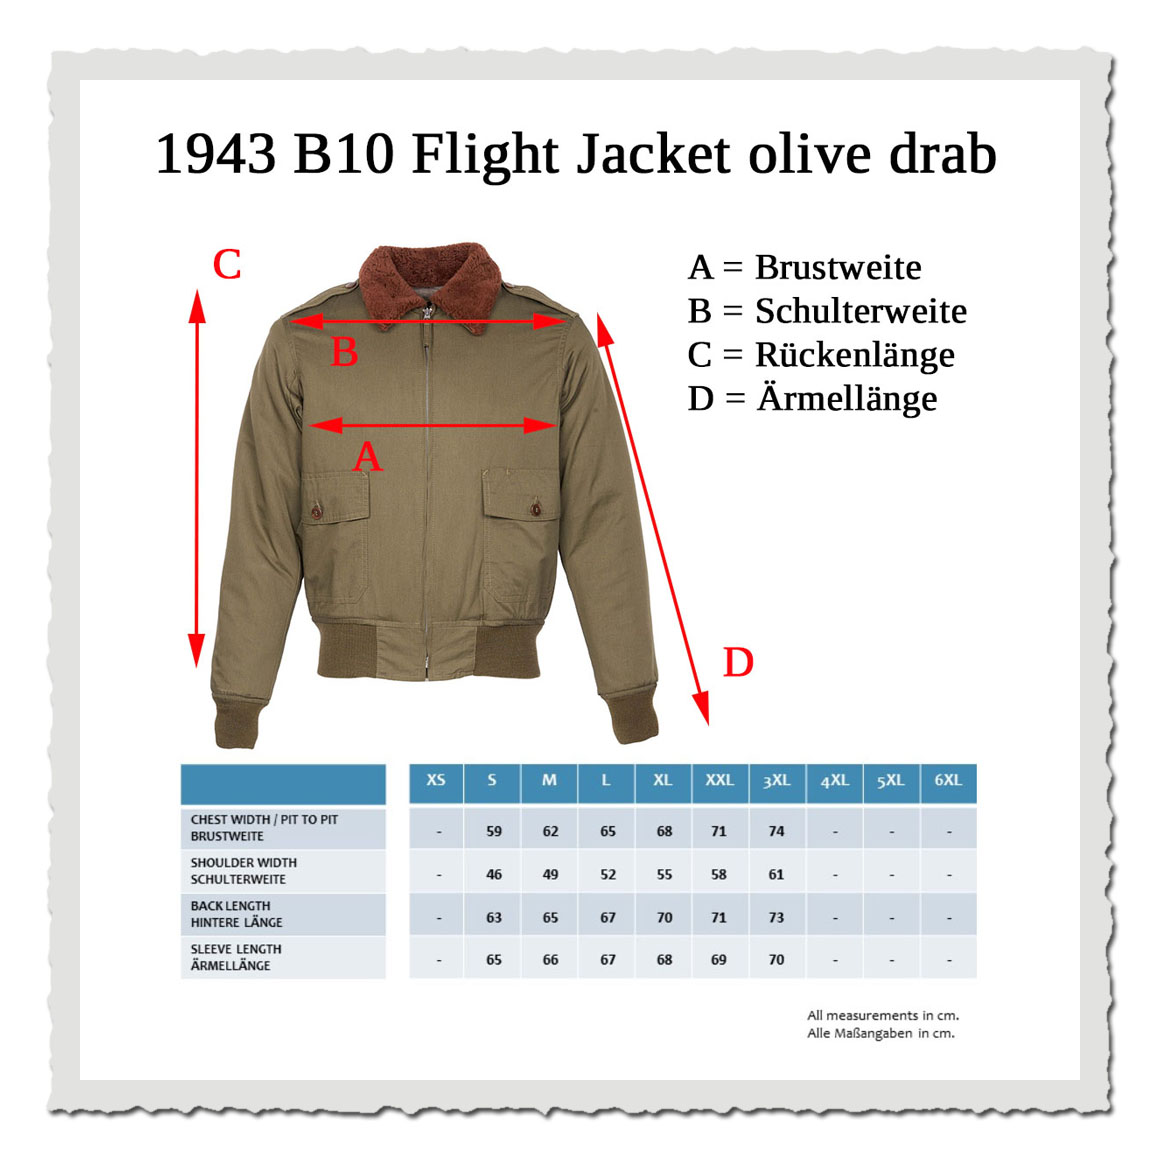 1943 B10 Flight Jacket olive drab